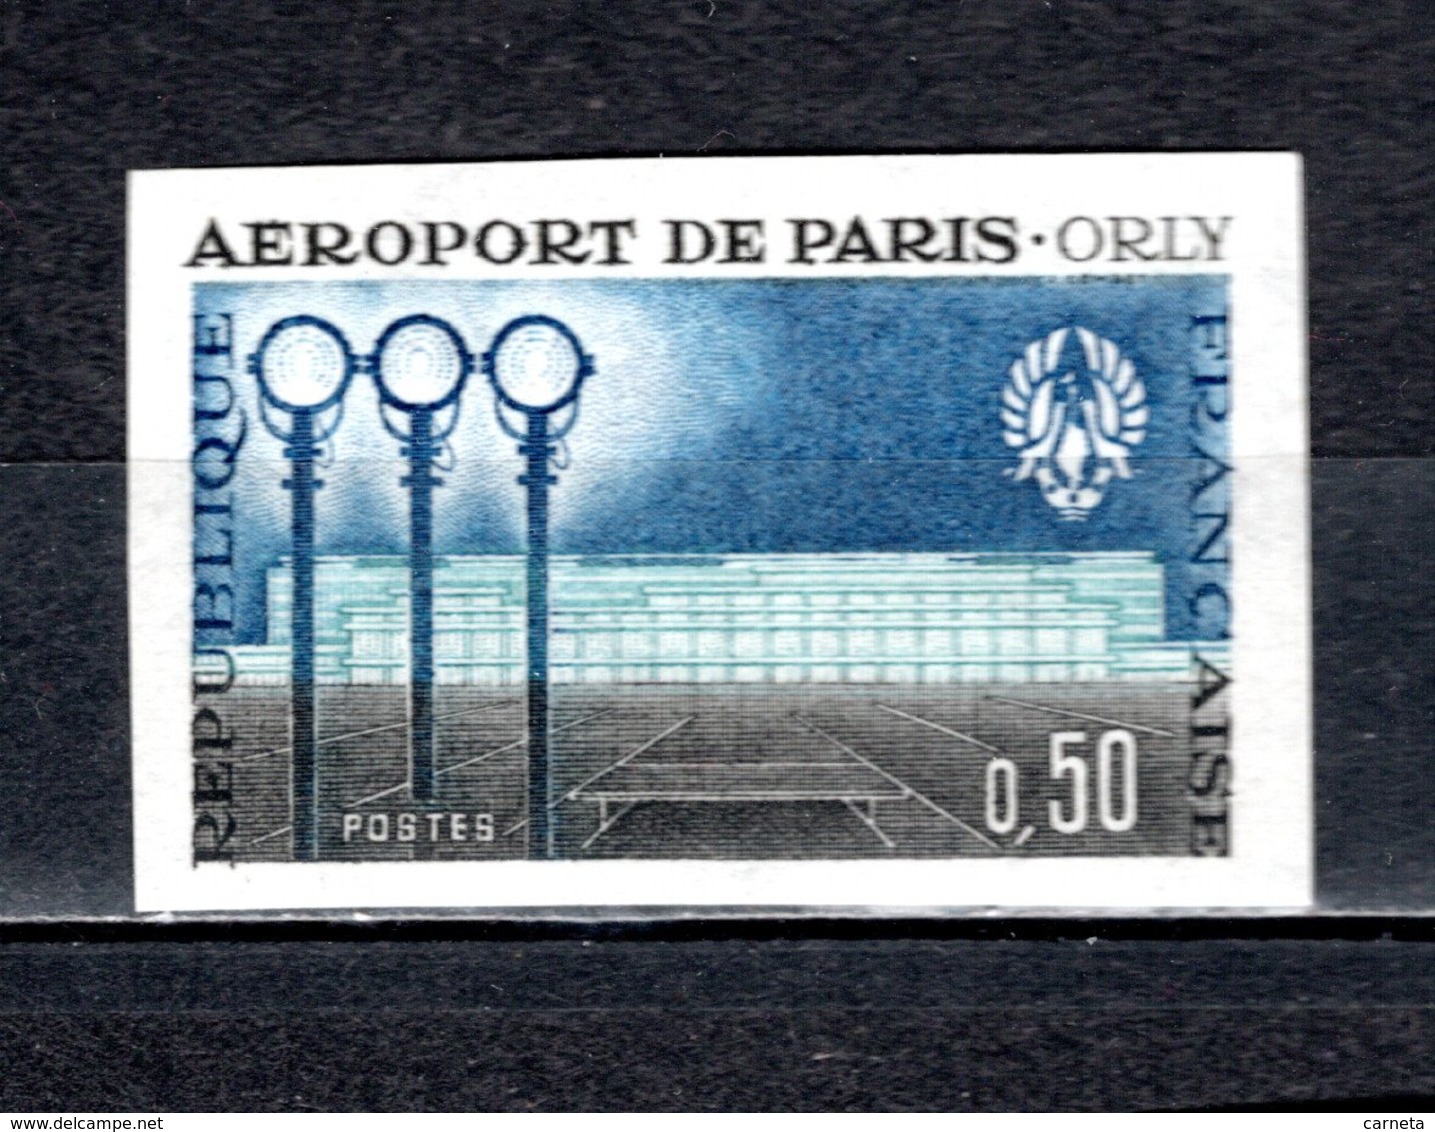 FRANCE  N° 1283a  NON DENTELE NEUF SANS CHARNIERE  COTE 46.00€  AEROPORT DE PARIS - Non Classés